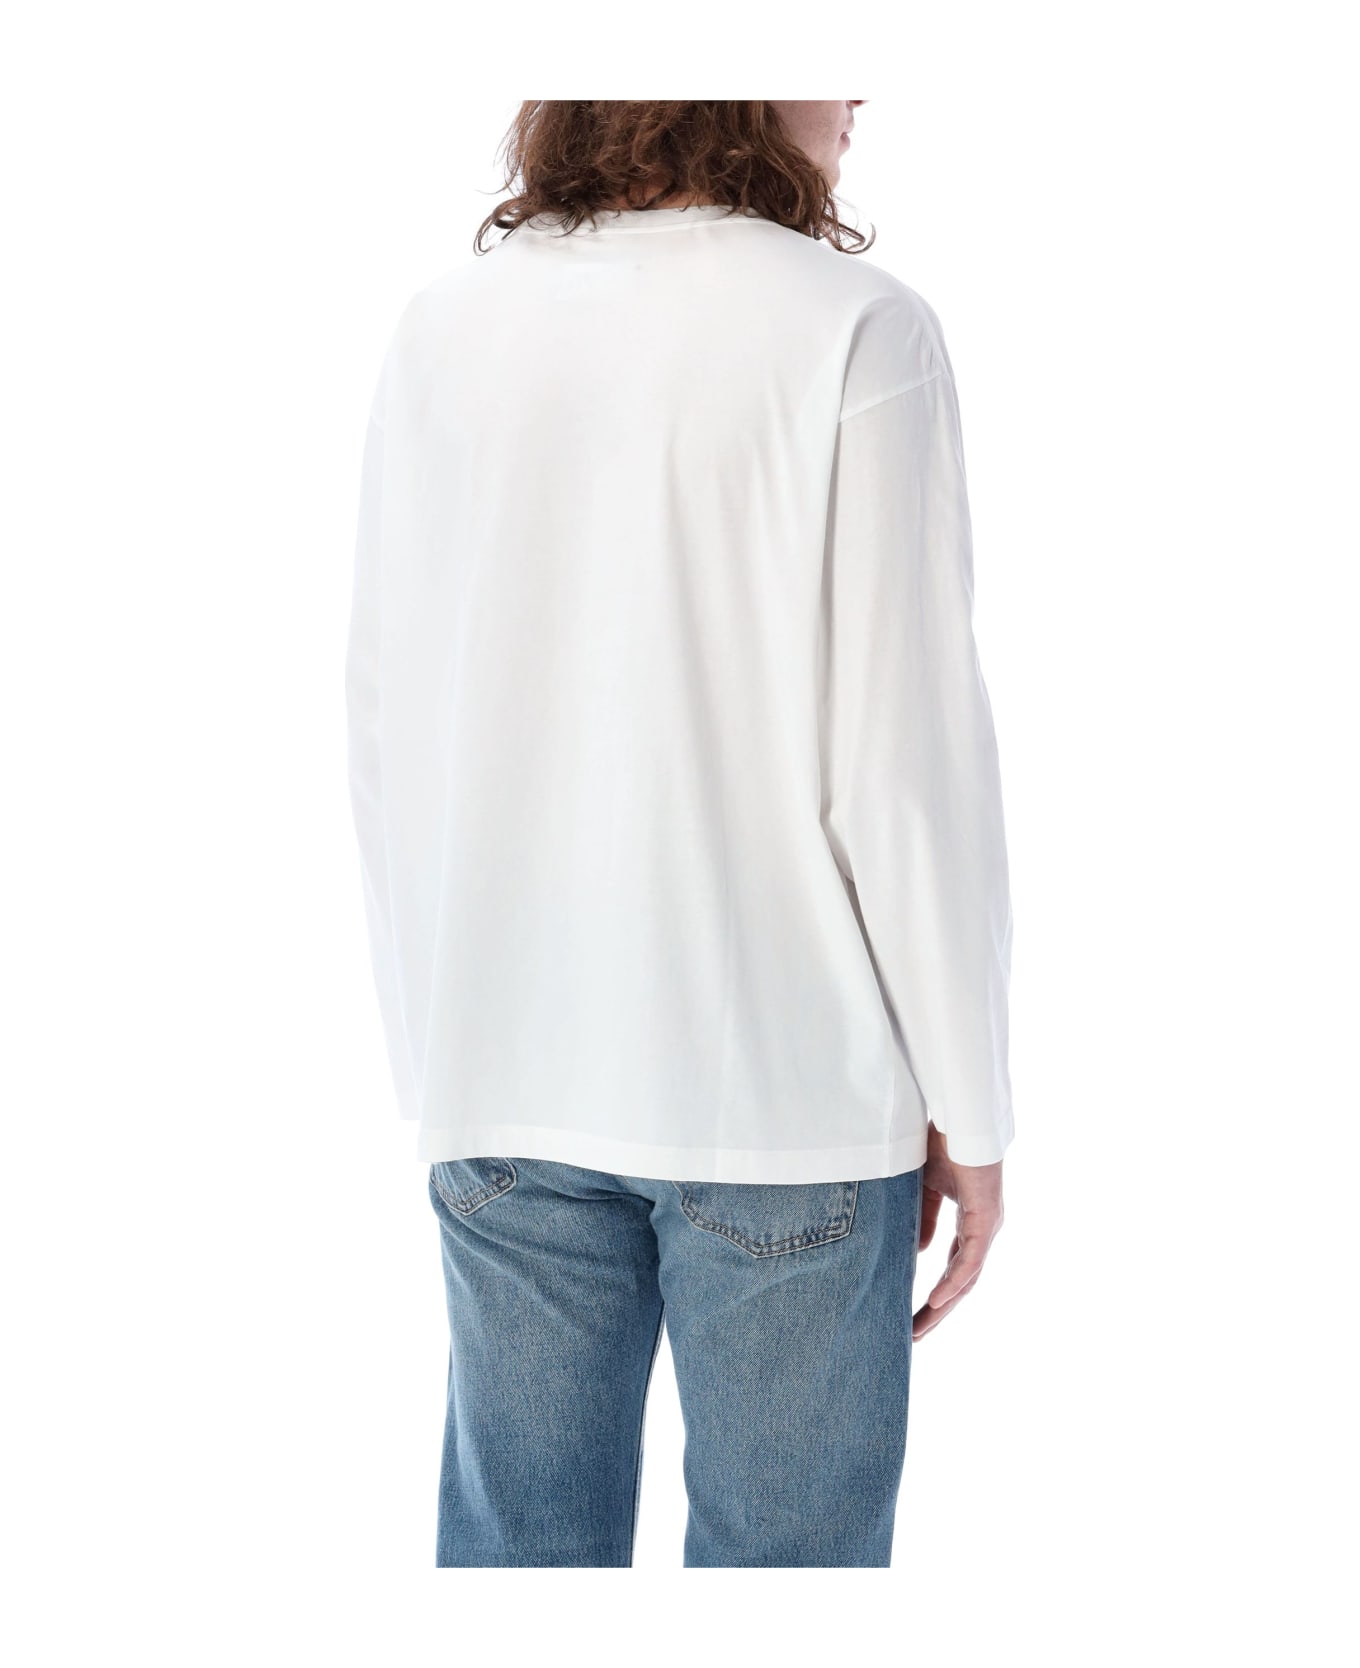 MM6 Maison Margiela Numeric Signature T-shirt - White シャツ